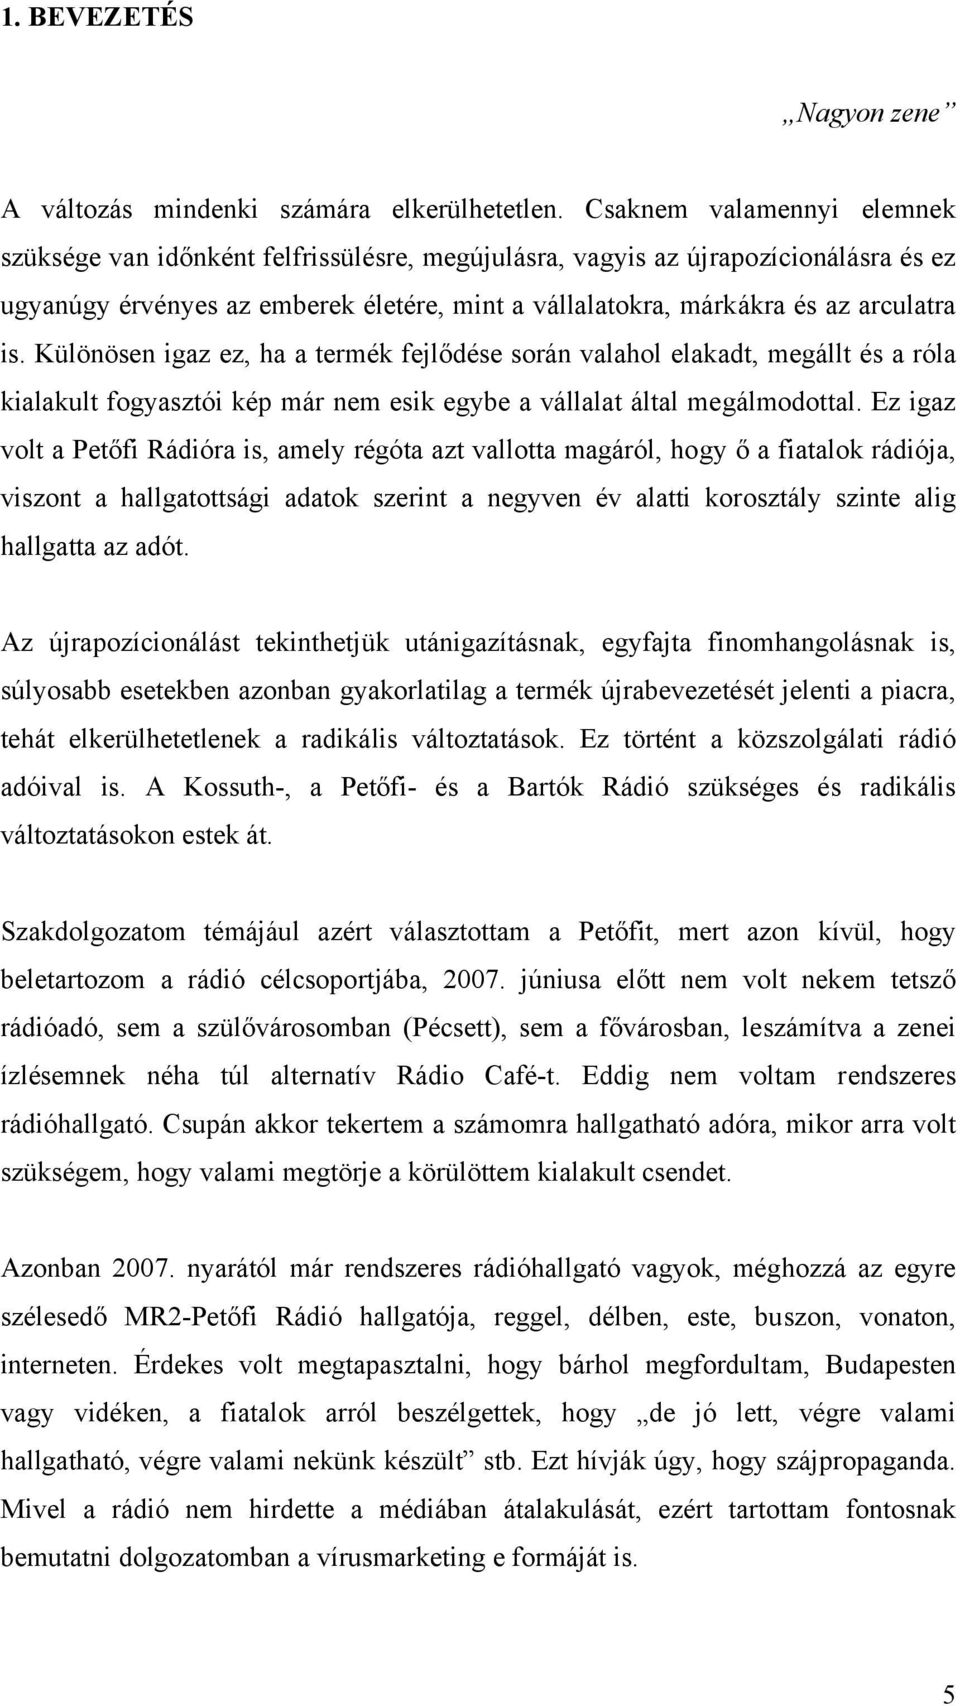 SZAKDOLGOZAT Szabó Veronika - PDF Ingyenes letöltés